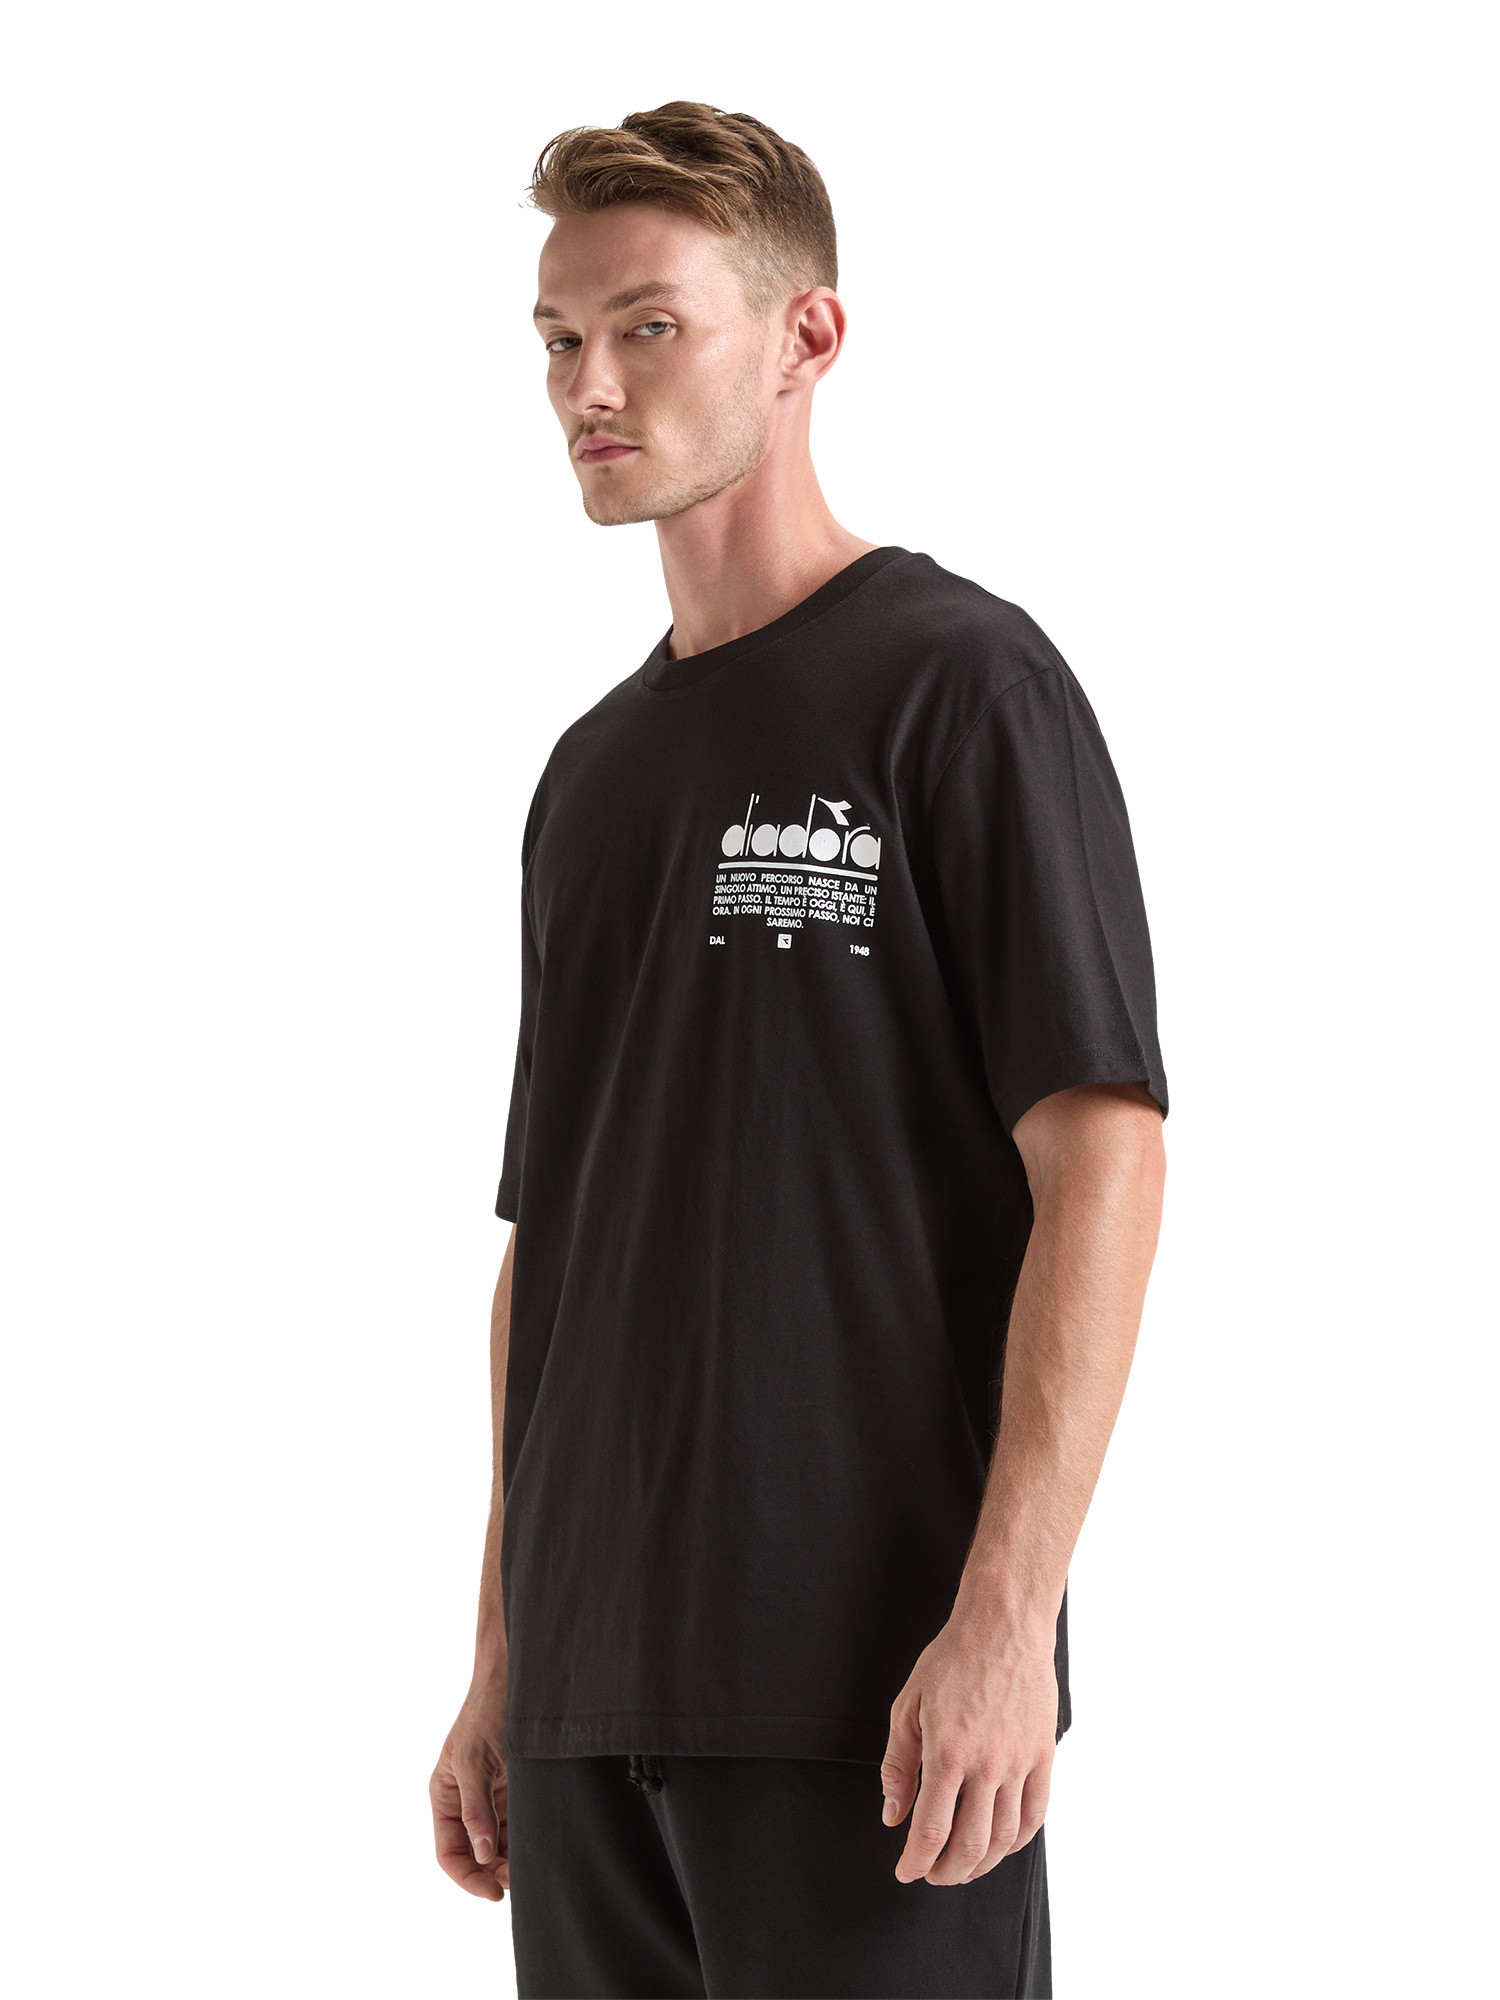 Diadora - Manifesto cotton T-shirt, Black, large image number 2